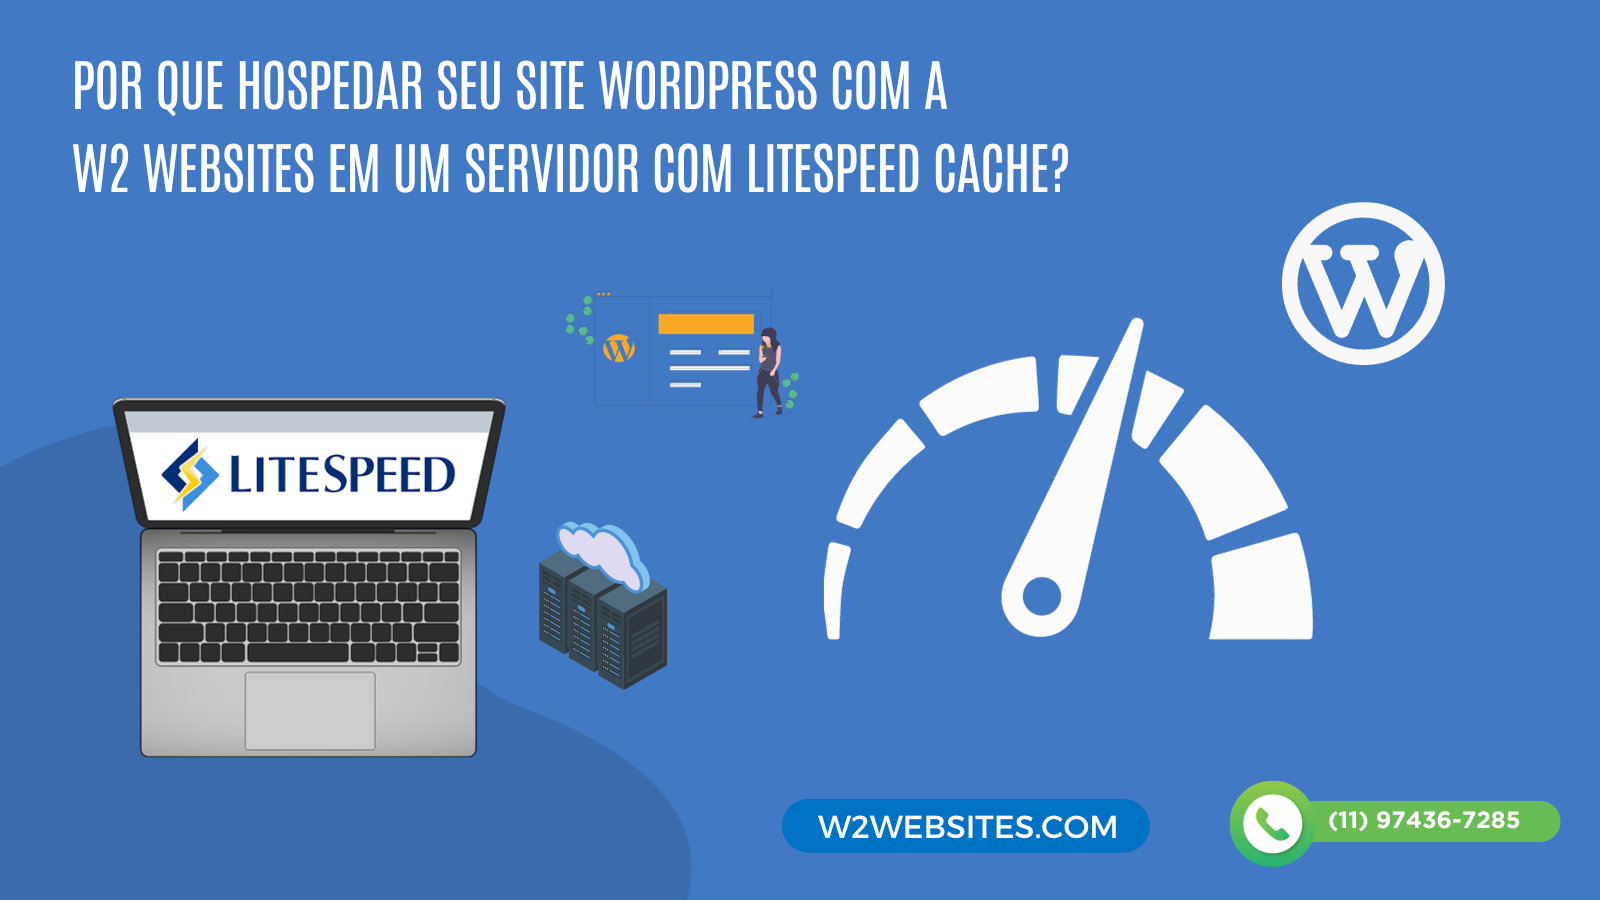 WordPress: seu site mais rápido com LiteSpeed Cache